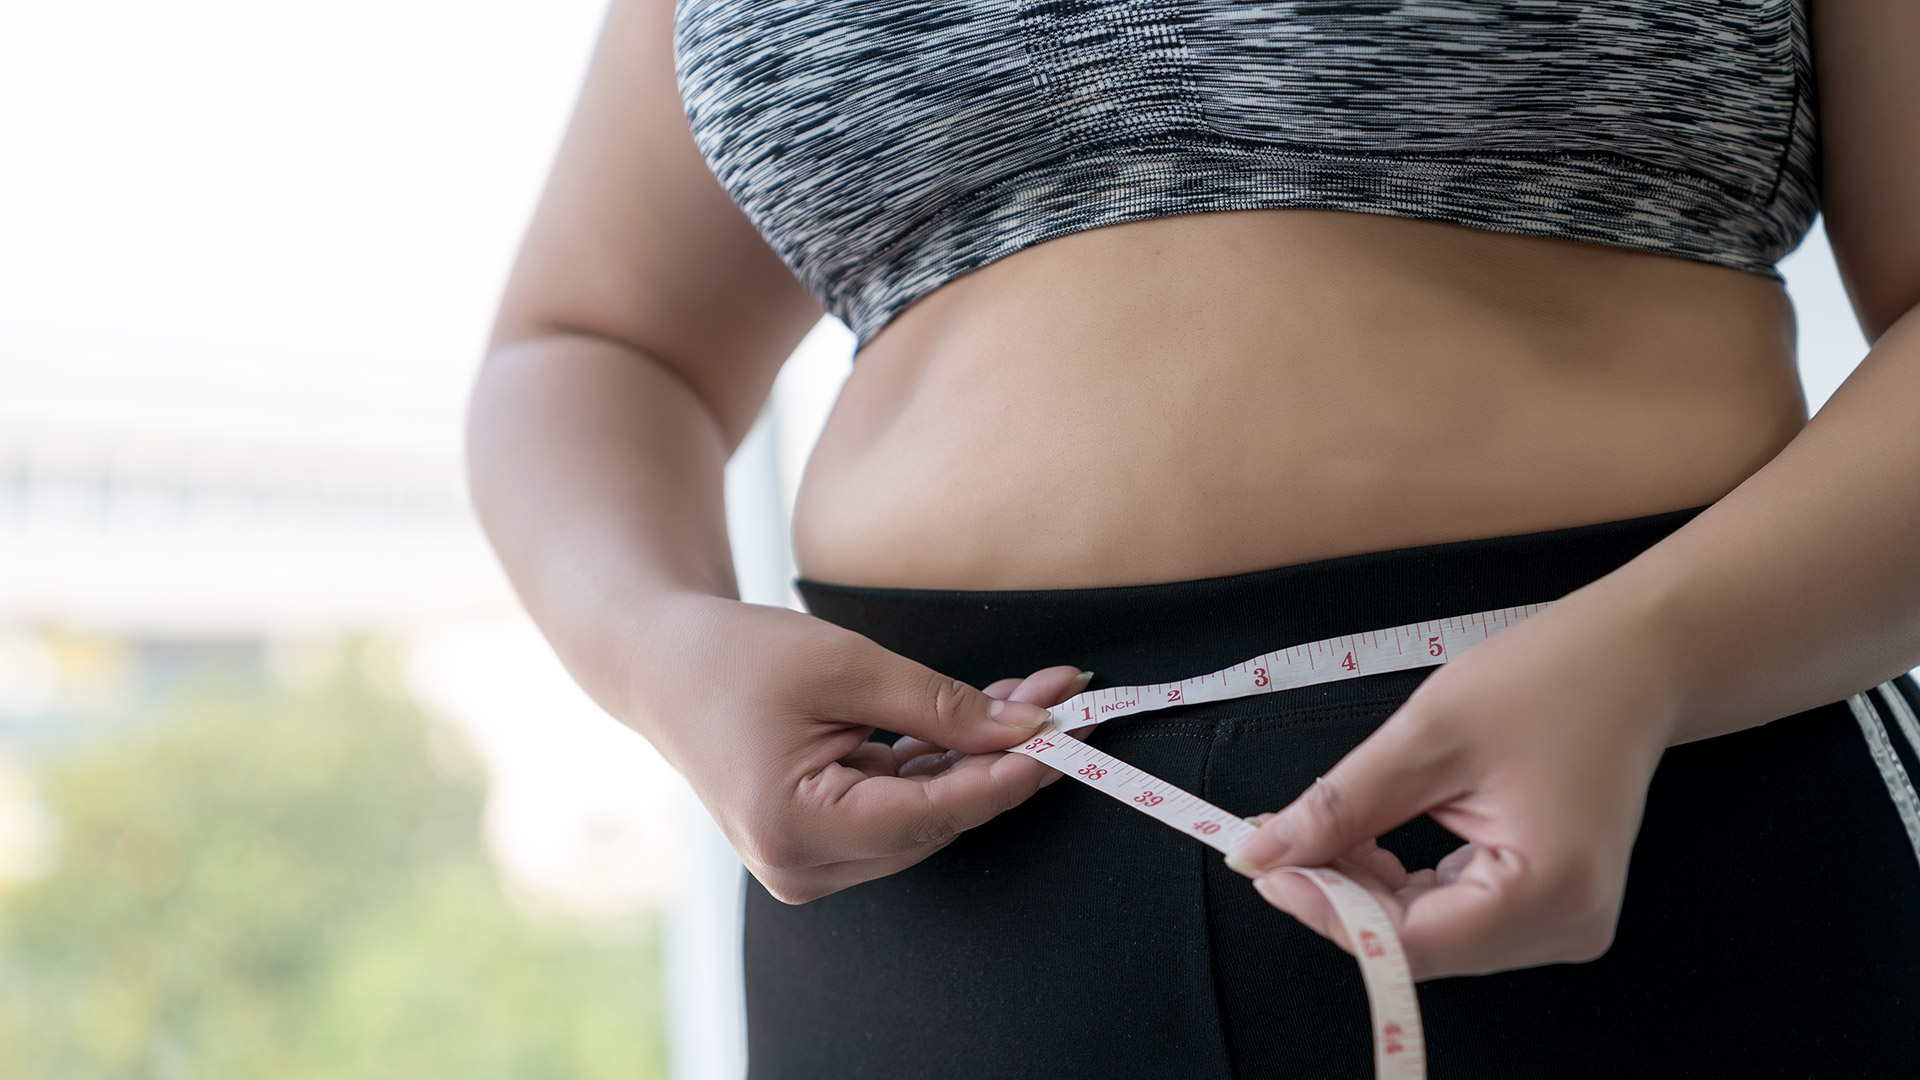 Investigadores revelaron que la dieta mediterránea no es la mas efectiva para disminuir la grasa visceral